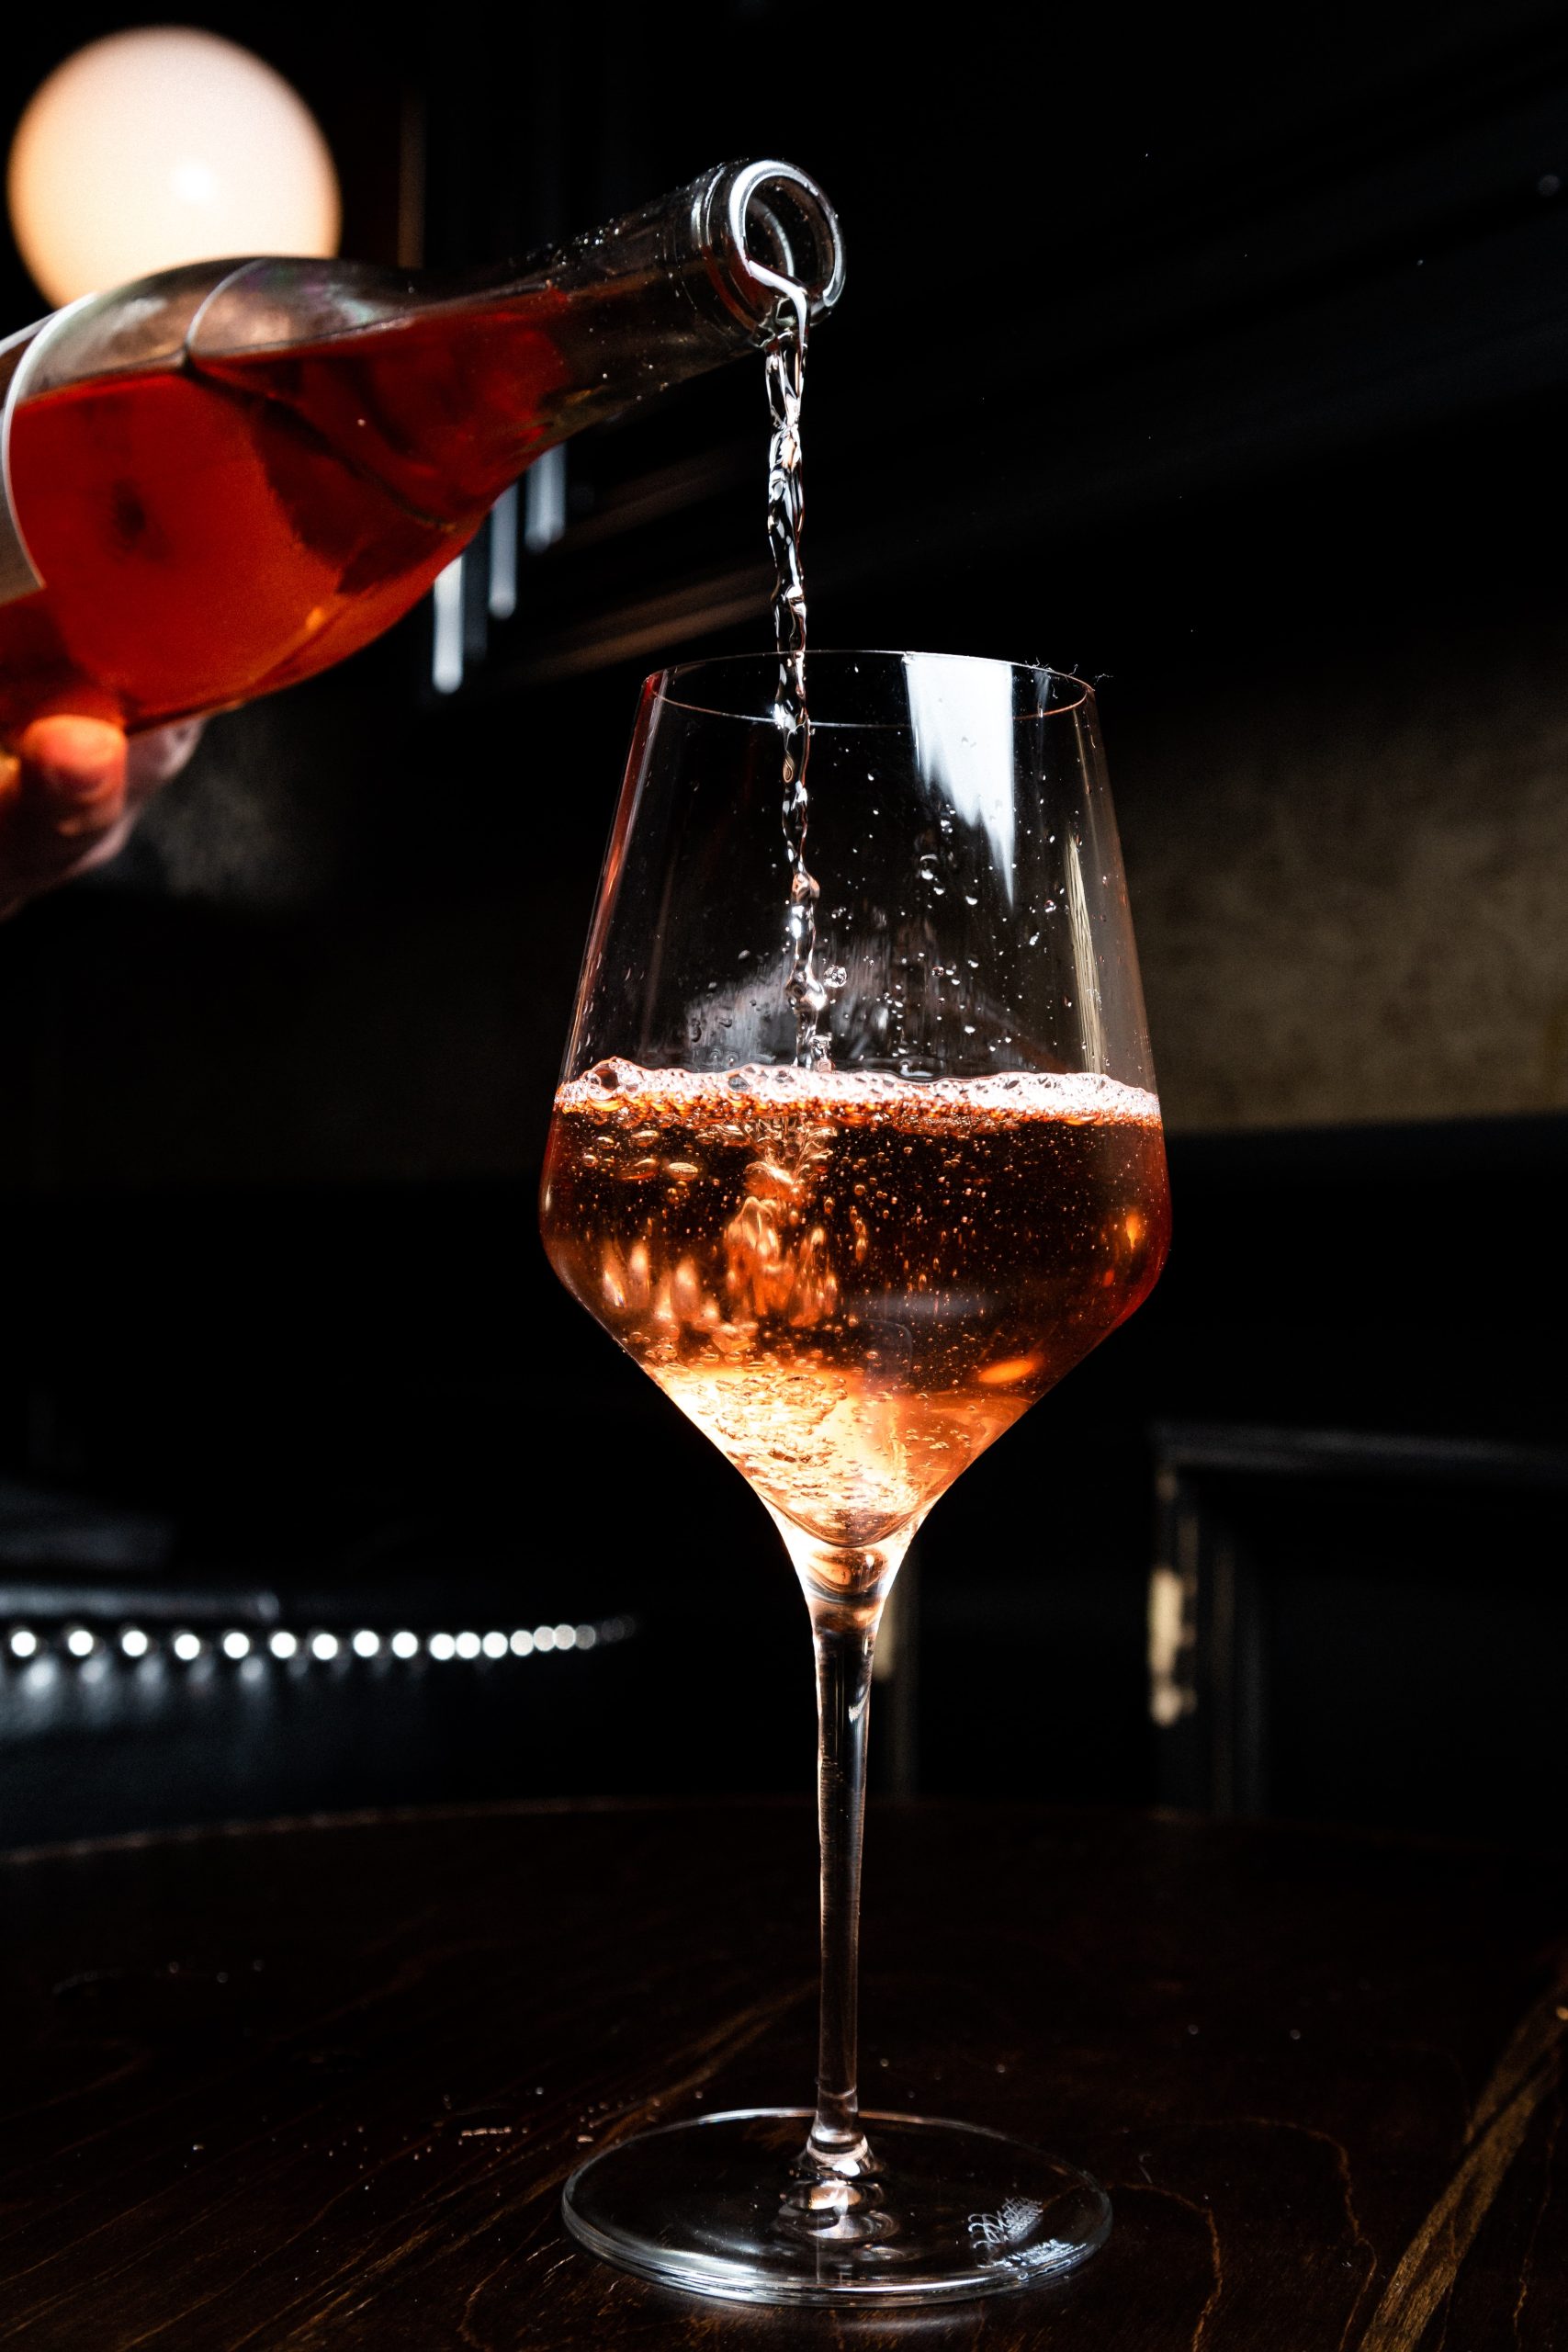 Uma pessoa serve vinho rosé em uma taça.